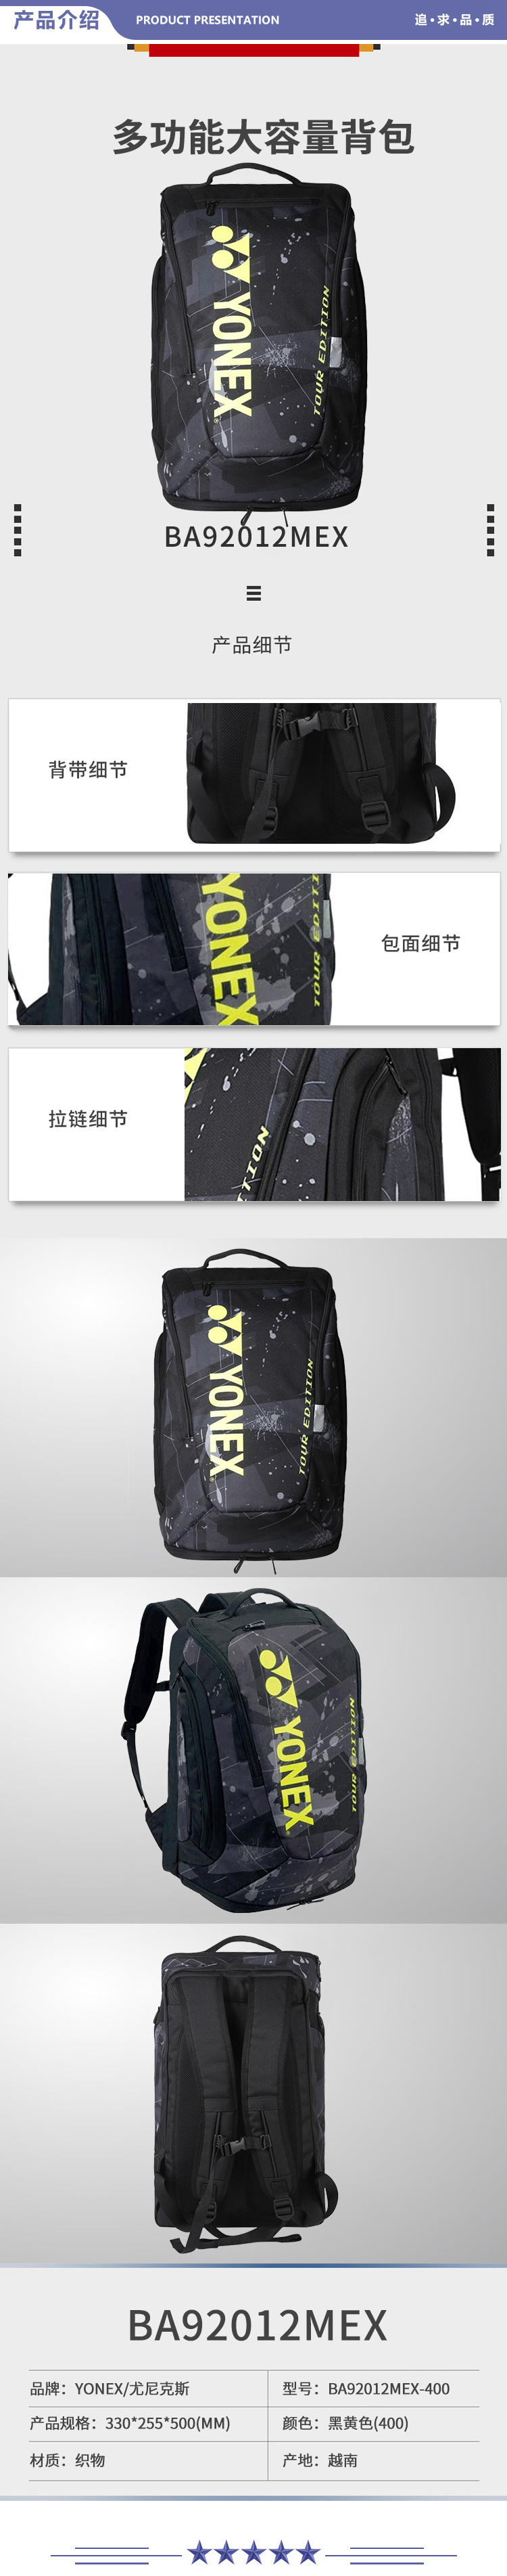 尤尼克斯 BA92012MEX-400 羽毛球包时尚轻巧便捷多功能大容量双肩背包黑黄 2.jpg